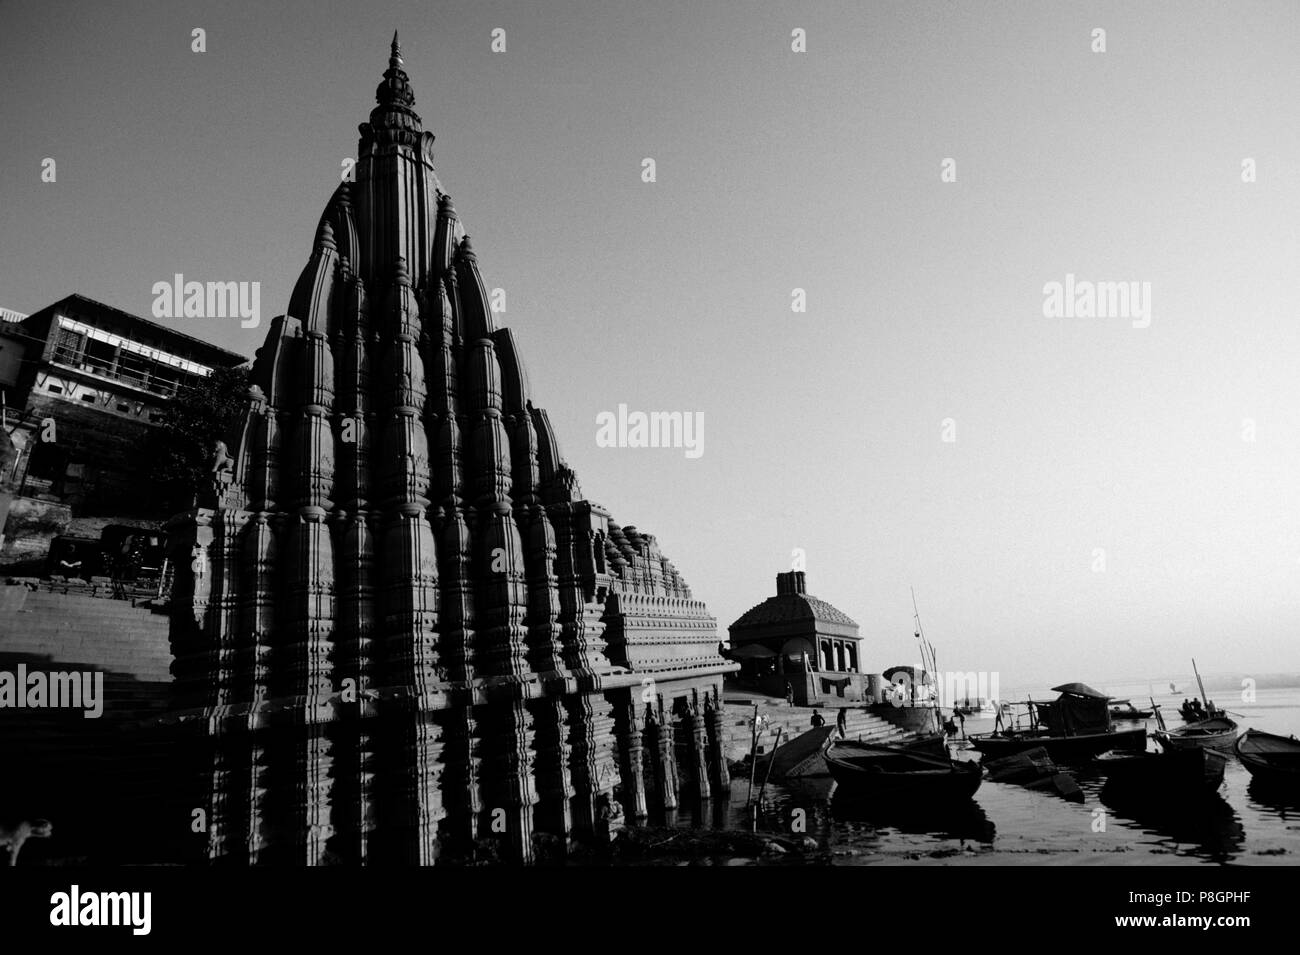 Ein Hindu Tempel erhebt sich über Kanus auf dem GANGES - VARANASI (Benares), Indien Stockfoto